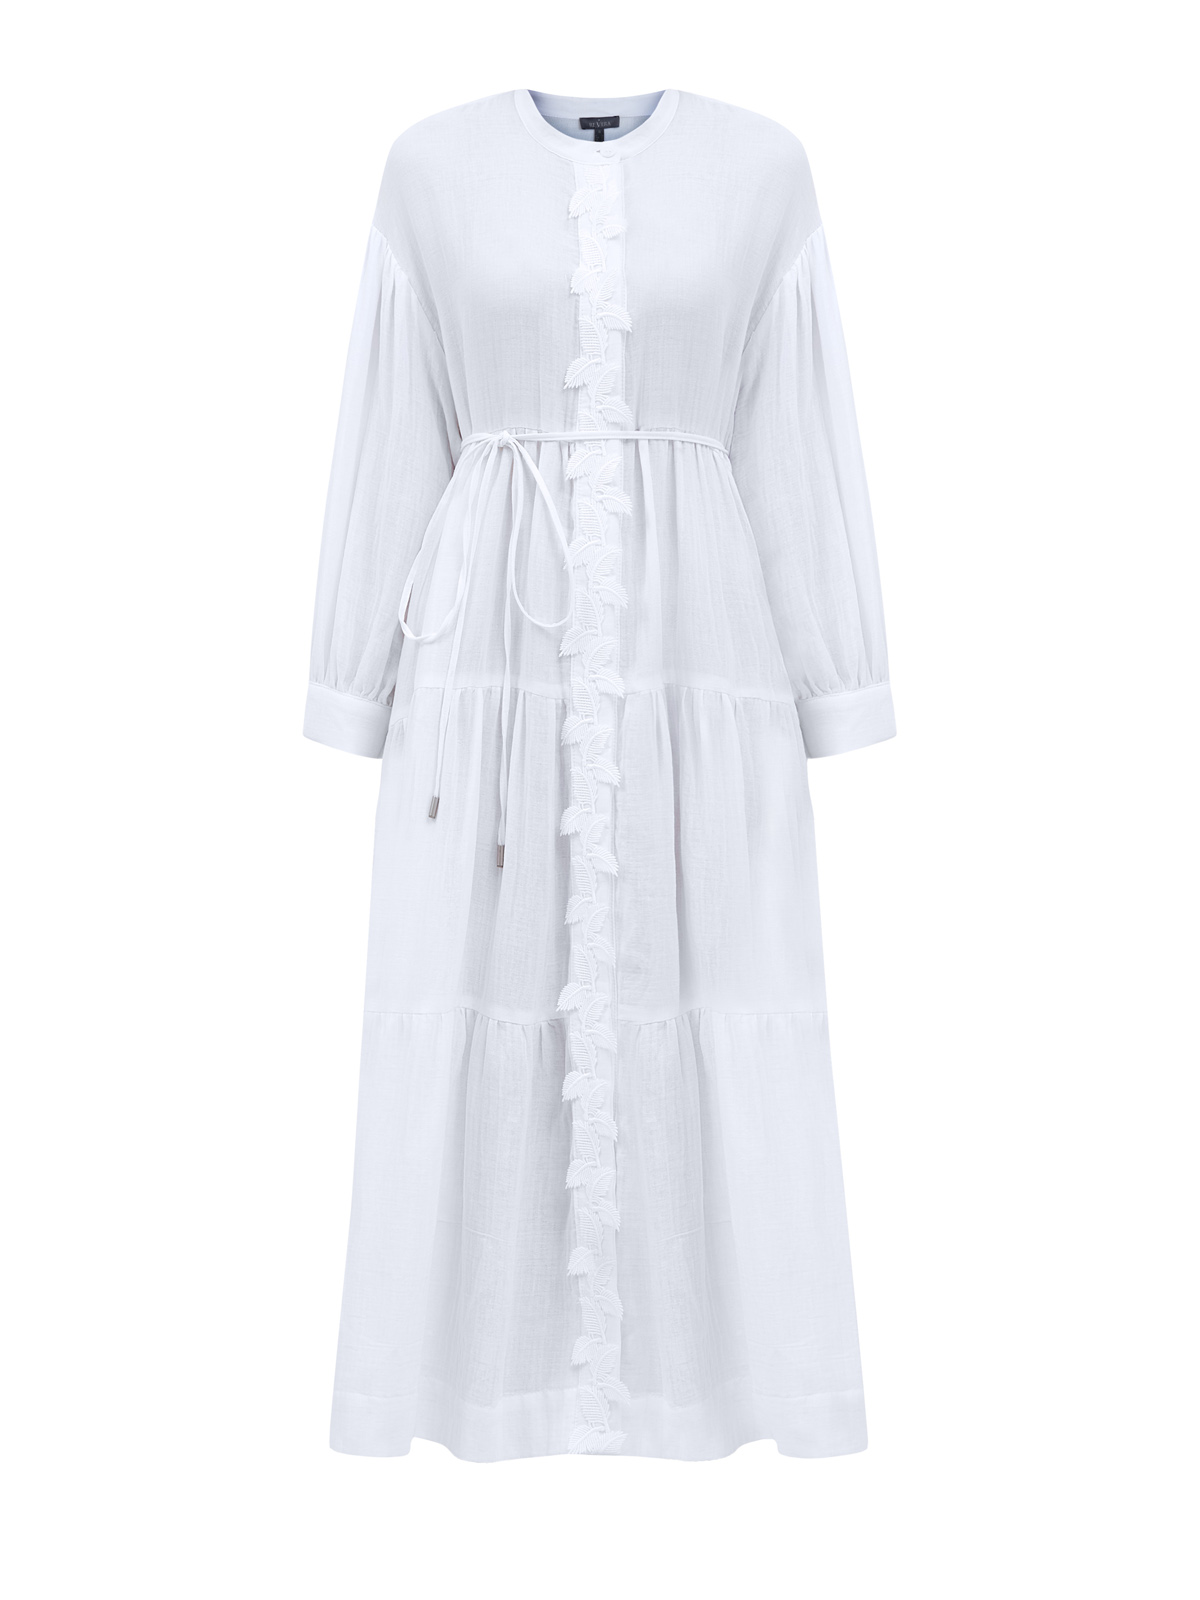 Хлопковое платье свободного кроя с узорной вышивкой и поясом RE VERA, цвет белый, размер 42;44;46 - фото 1